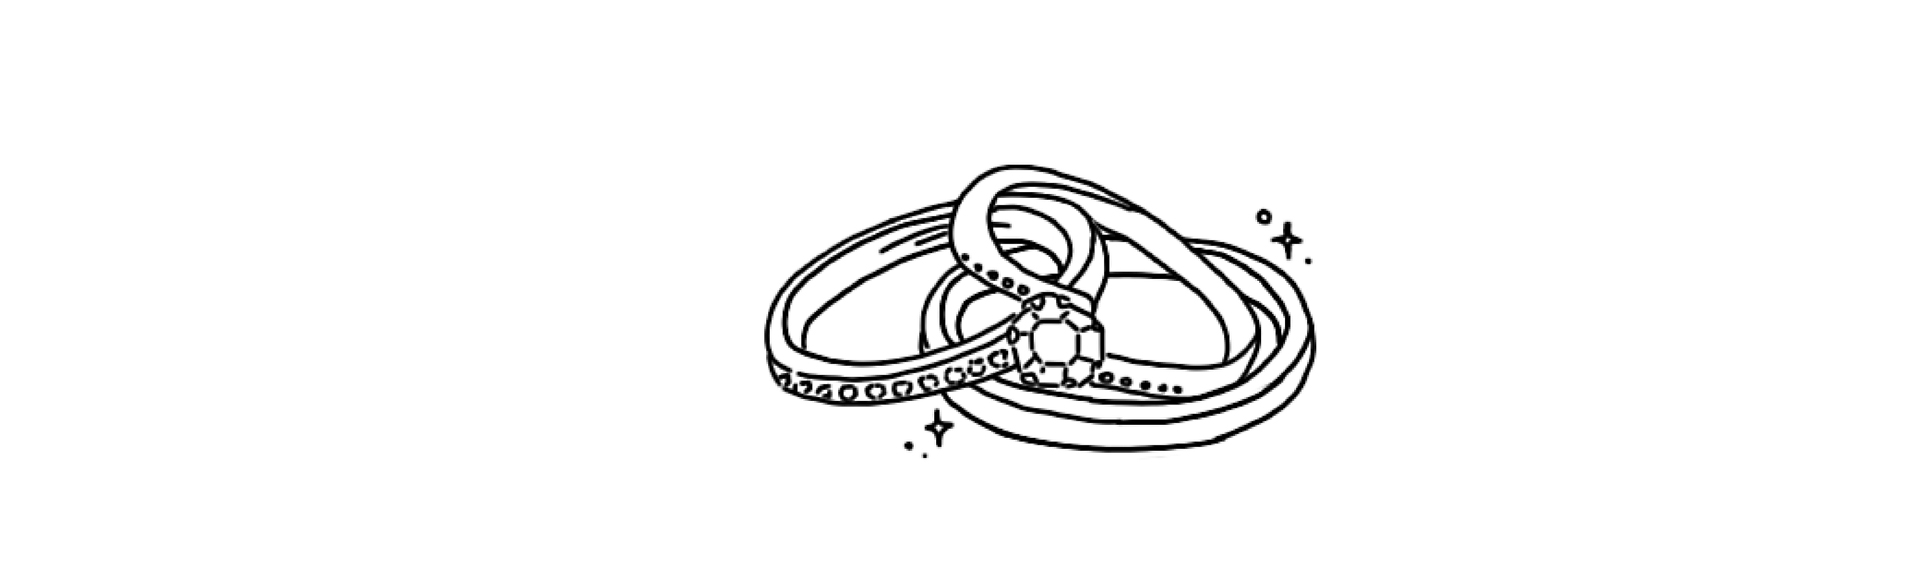 結婚指輪・婚約指輪 手作り同時製作コース